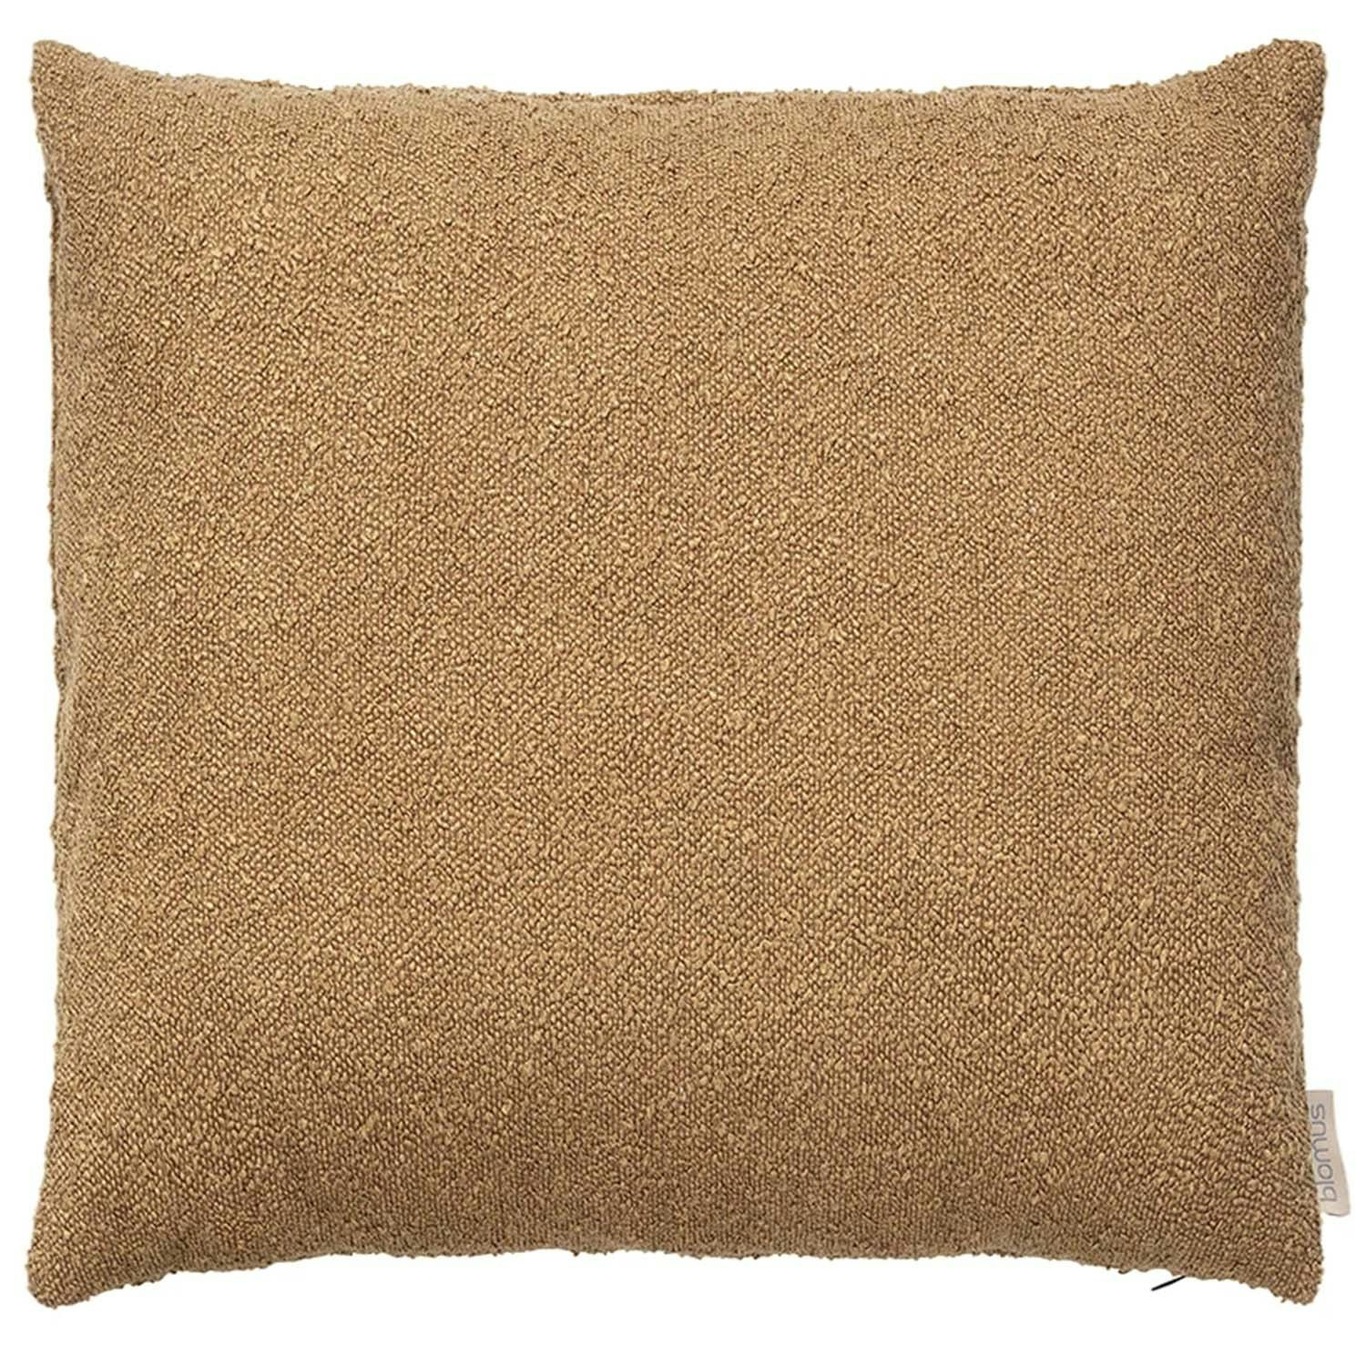 BOUCLE Cushion Cover 50X50 cm, Tan